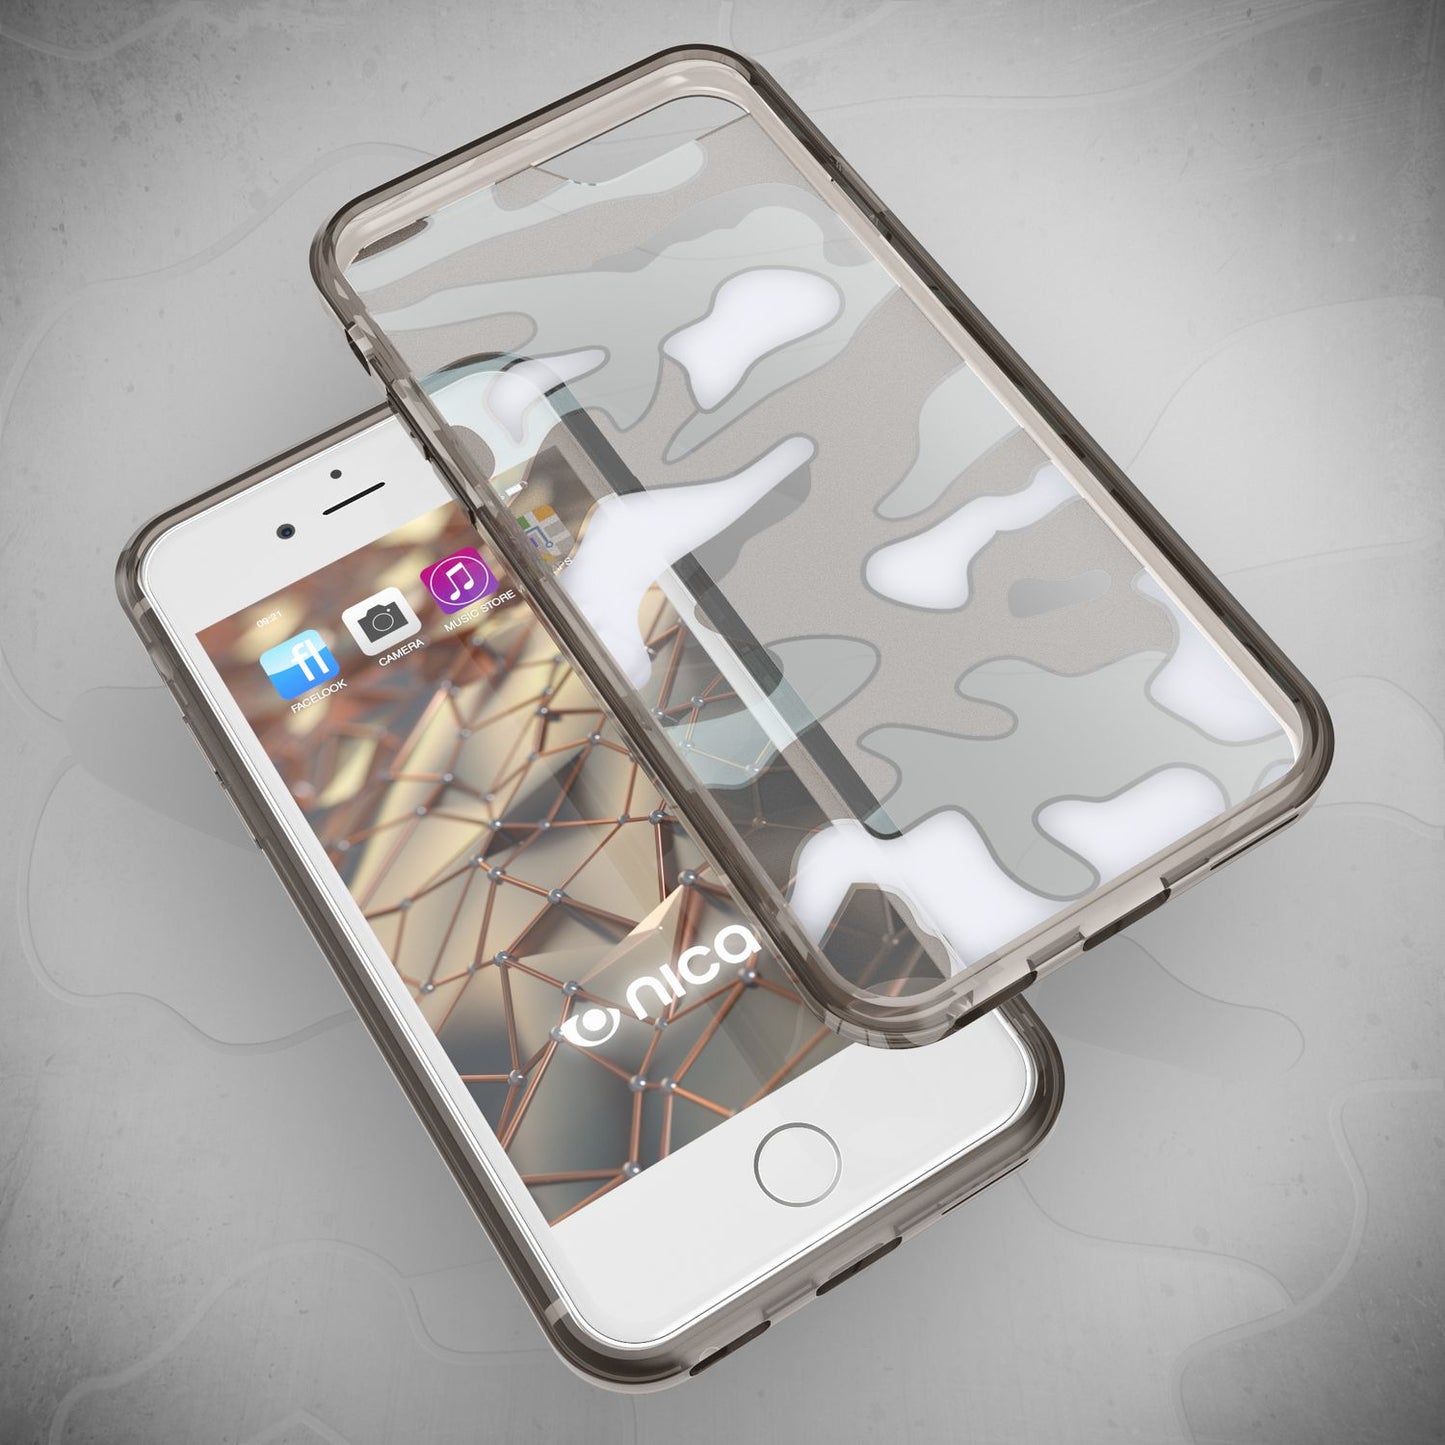 NALIA Handy Hülle für iPhone SE 2020 / 8 / 7, Camouflage Case Schutz Cover Etui